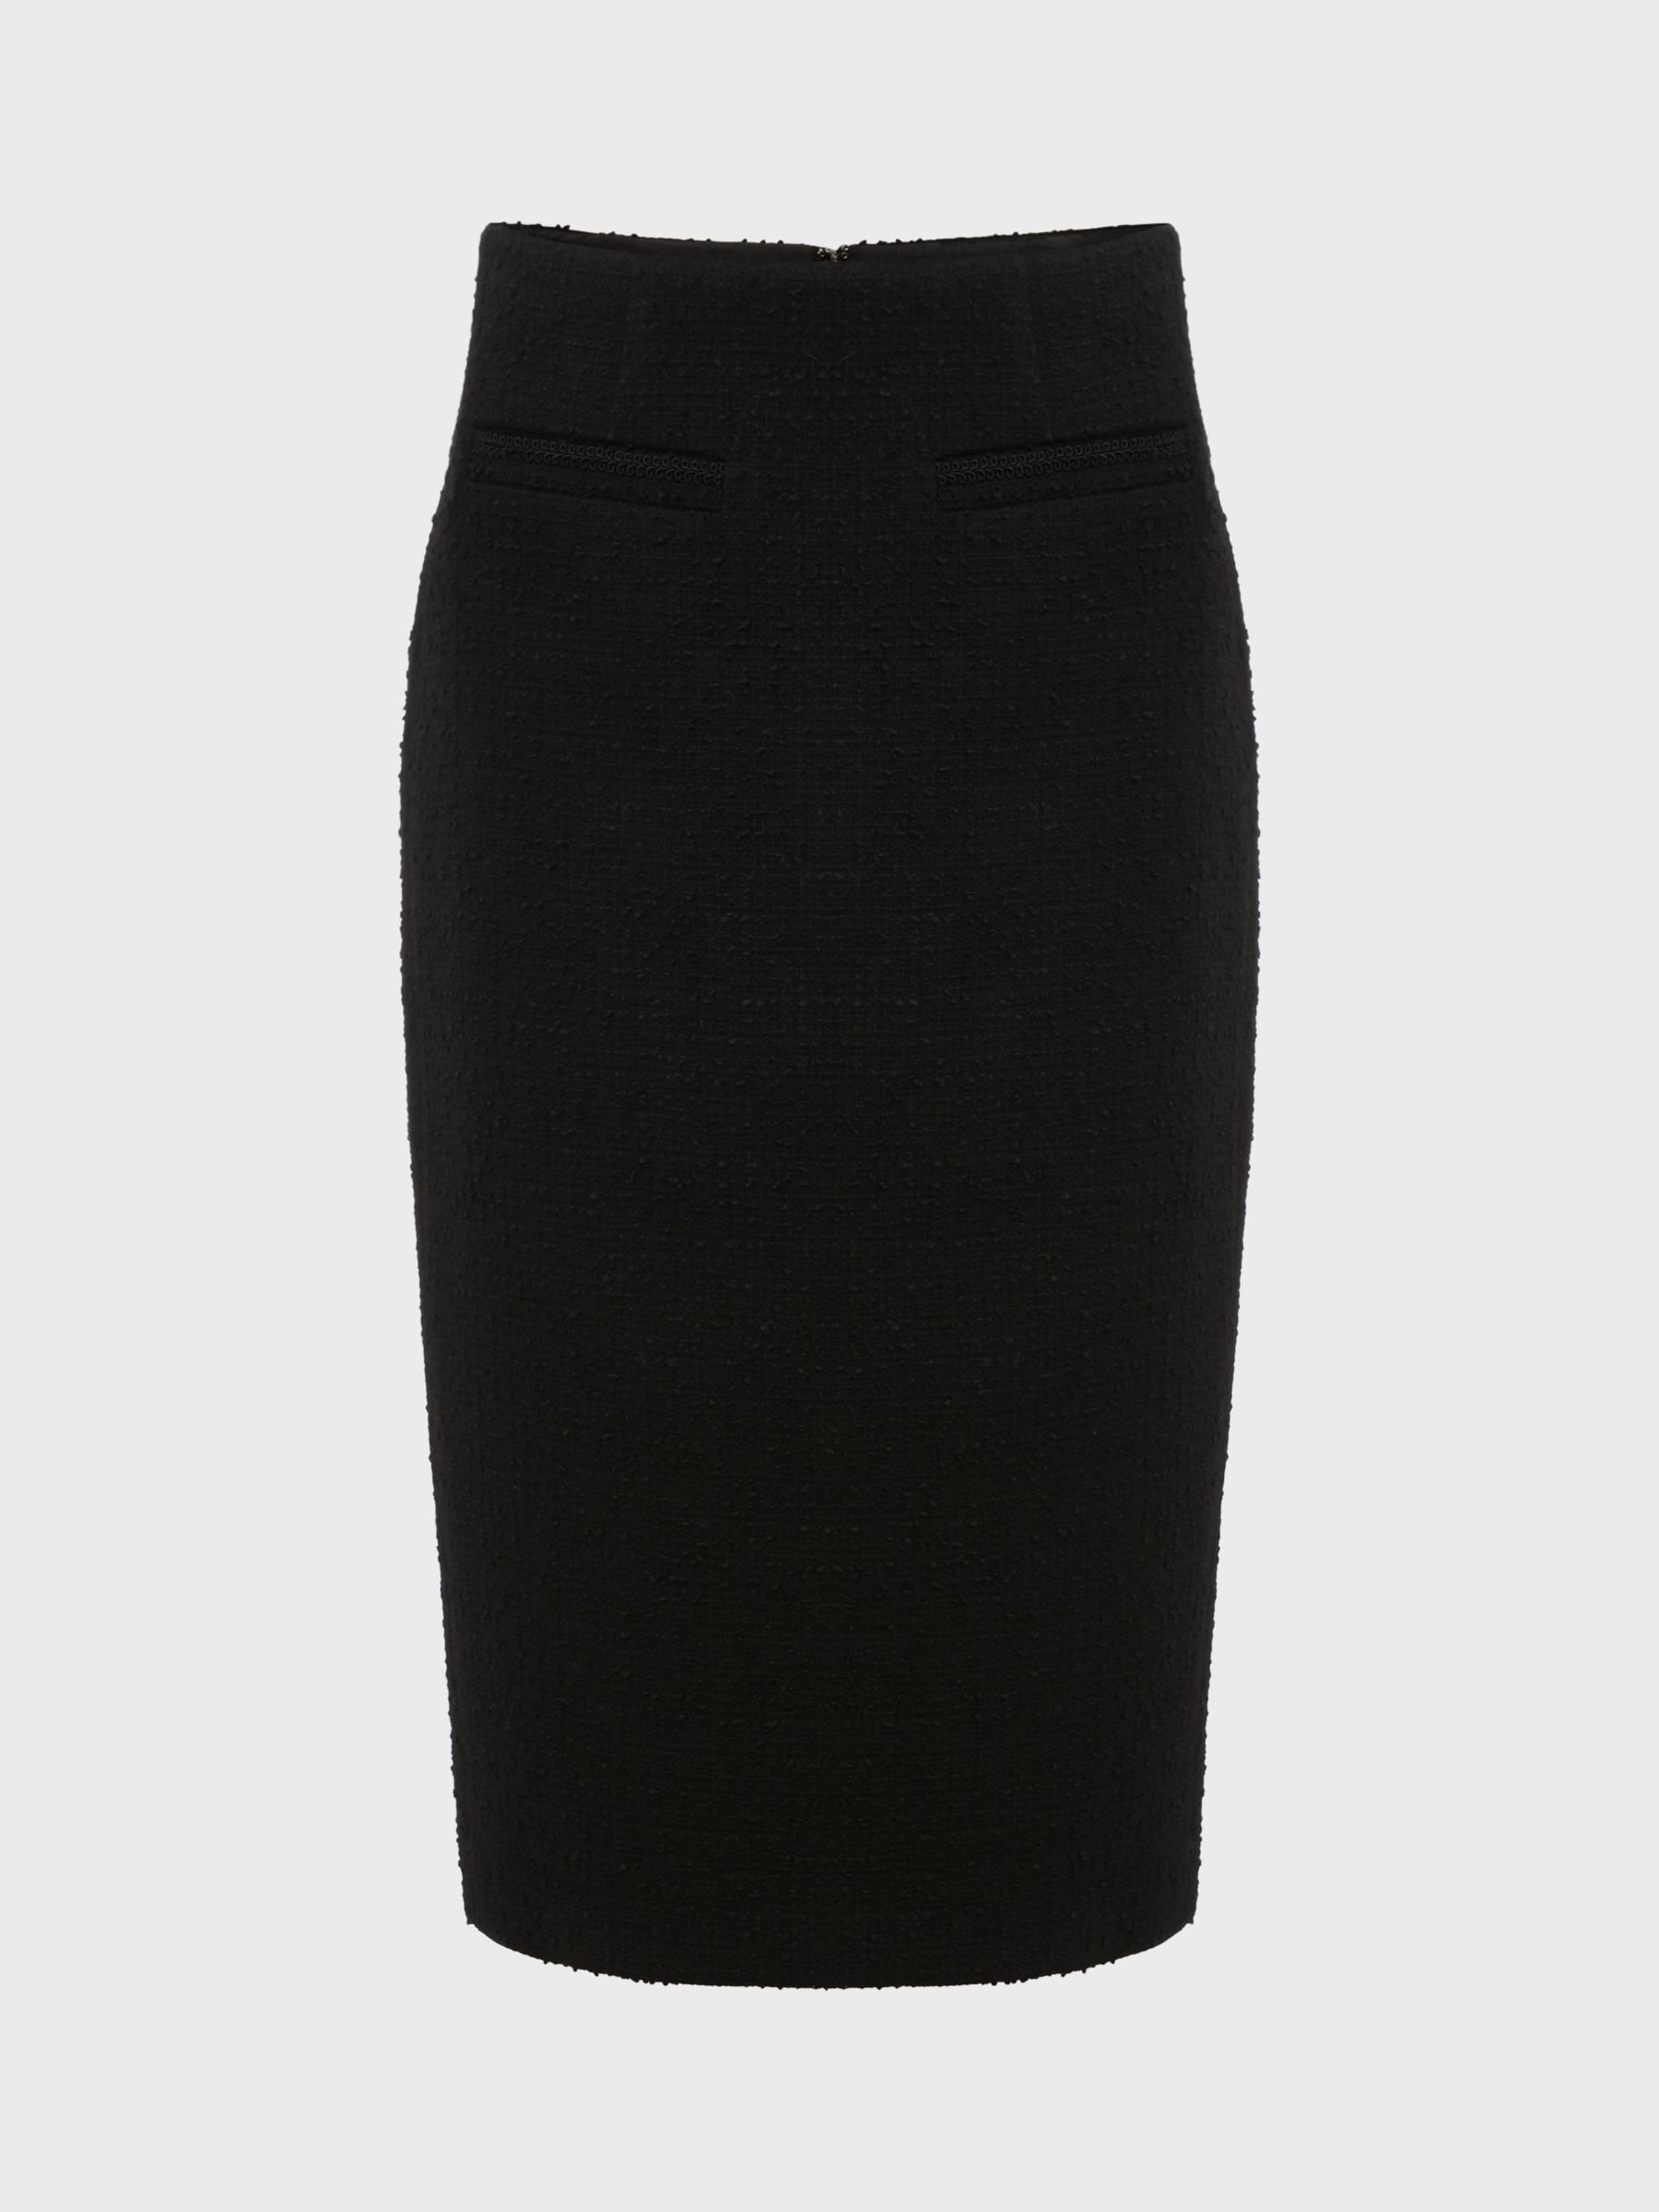 Hobbs Gabi Boucle Tweed Pencil Skirt, Black